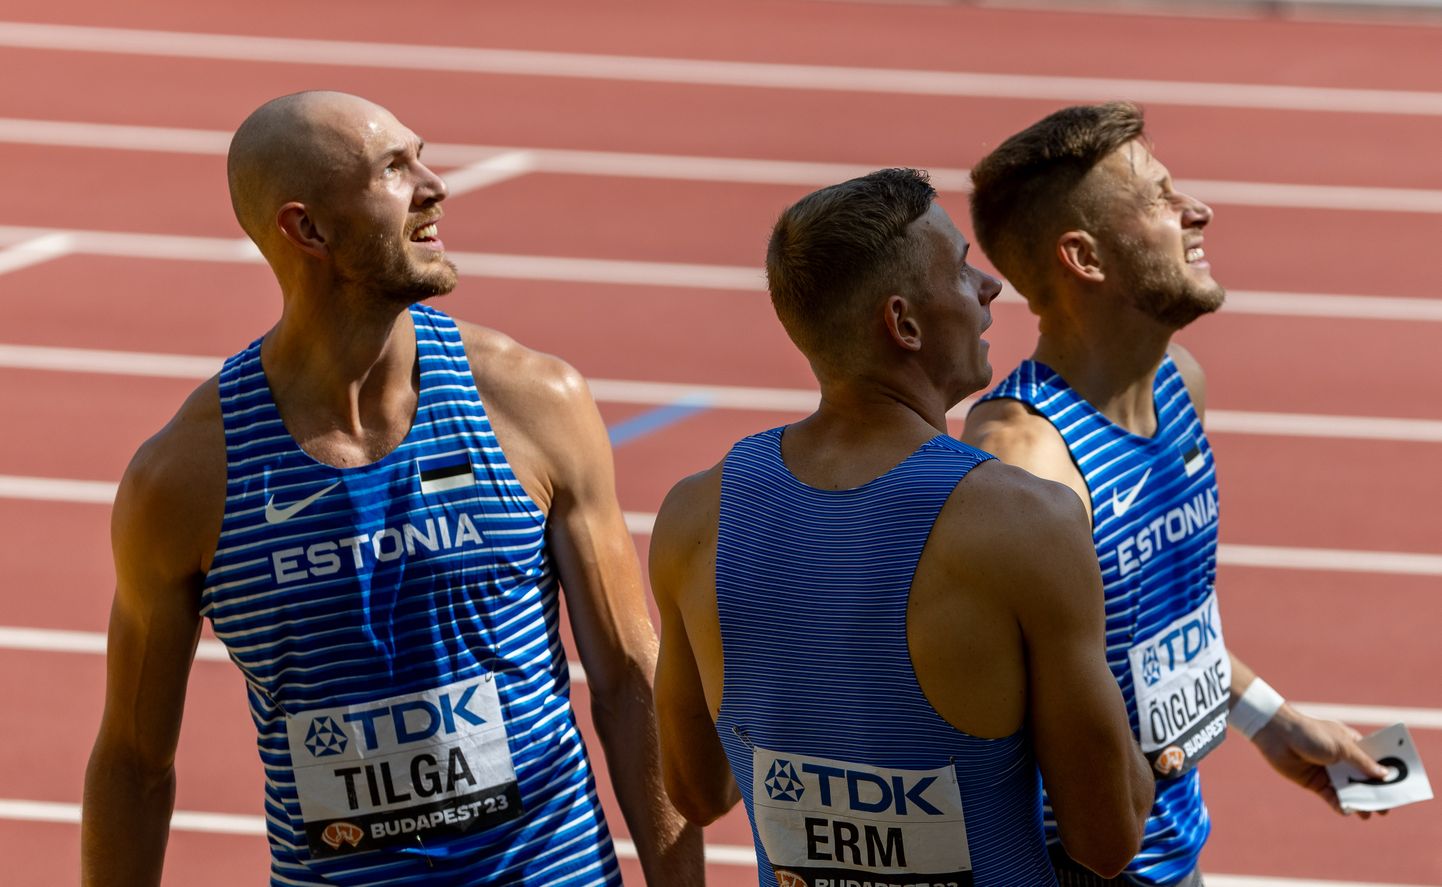 Eesti kümnevõitlejad Karel Tilga, Johannes Erm ja Janek Õiglane pakkusid Eesti spordisõpradele MMil võimsaid emotsioone.